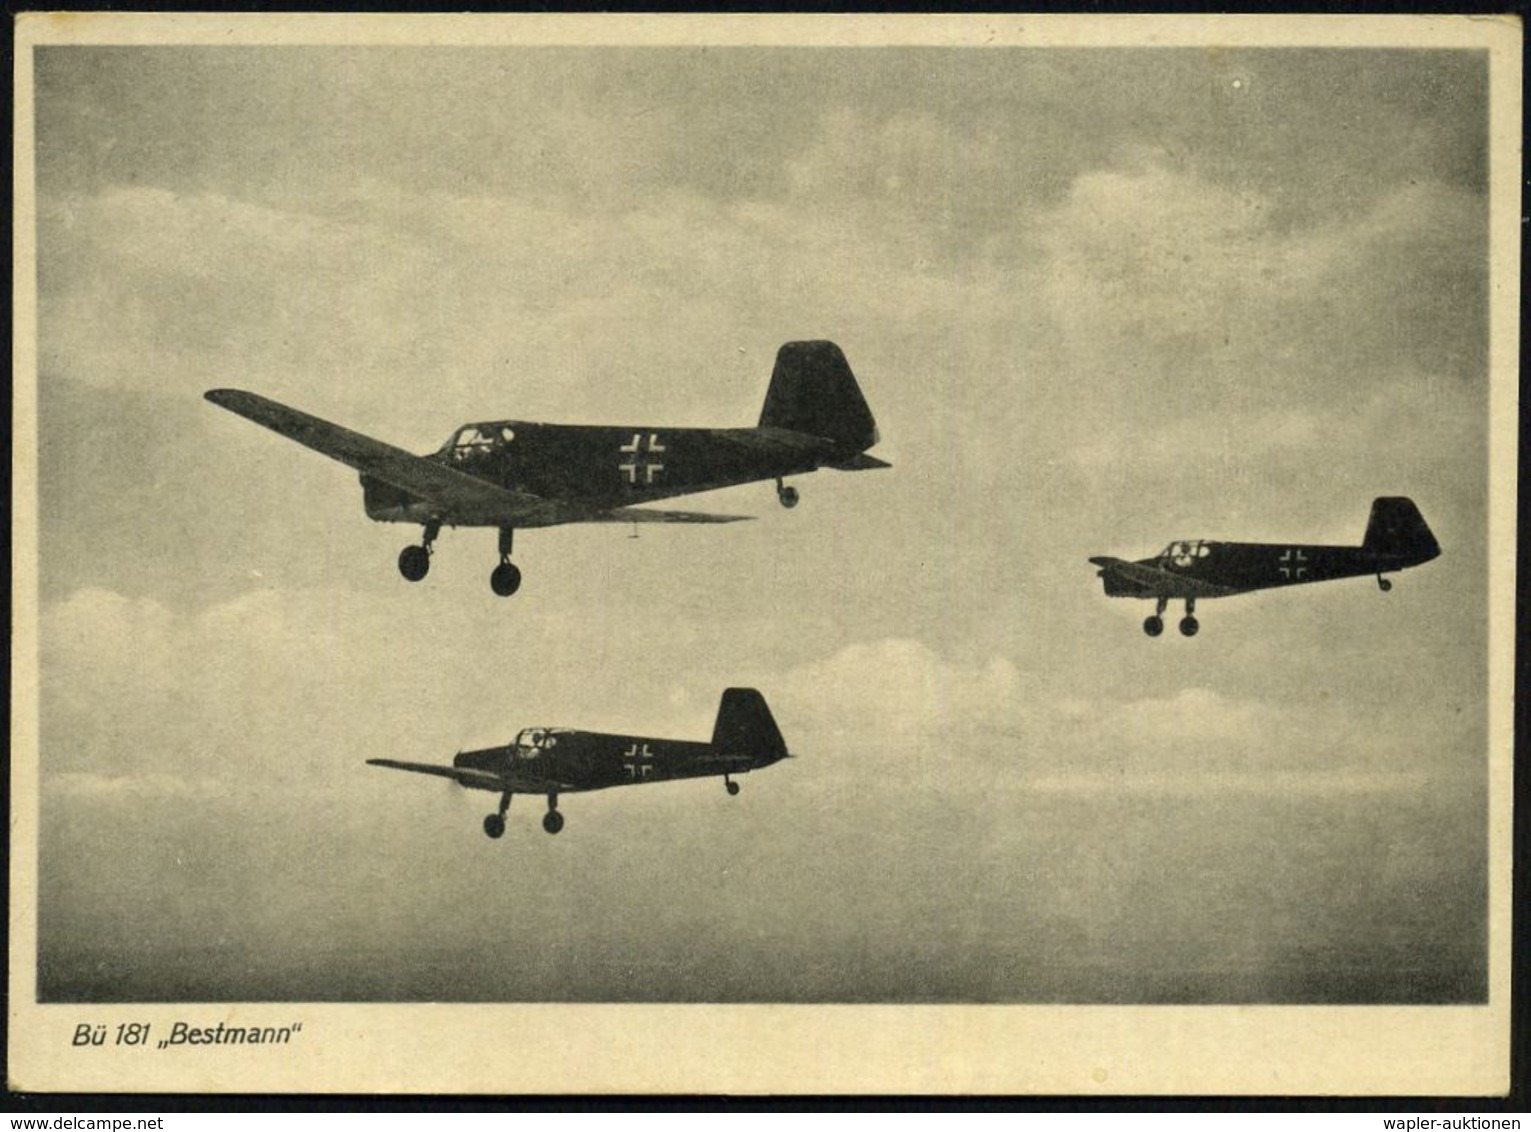 MILITÄRFLUGWESEN / MILITÄRFLUGZEUGE : DEUTSCHES REICH 1942 (Okt.) S/w.-Foto-Ak.: Bücker Bü 181 "Bestmann", 3er-Formation - Avions